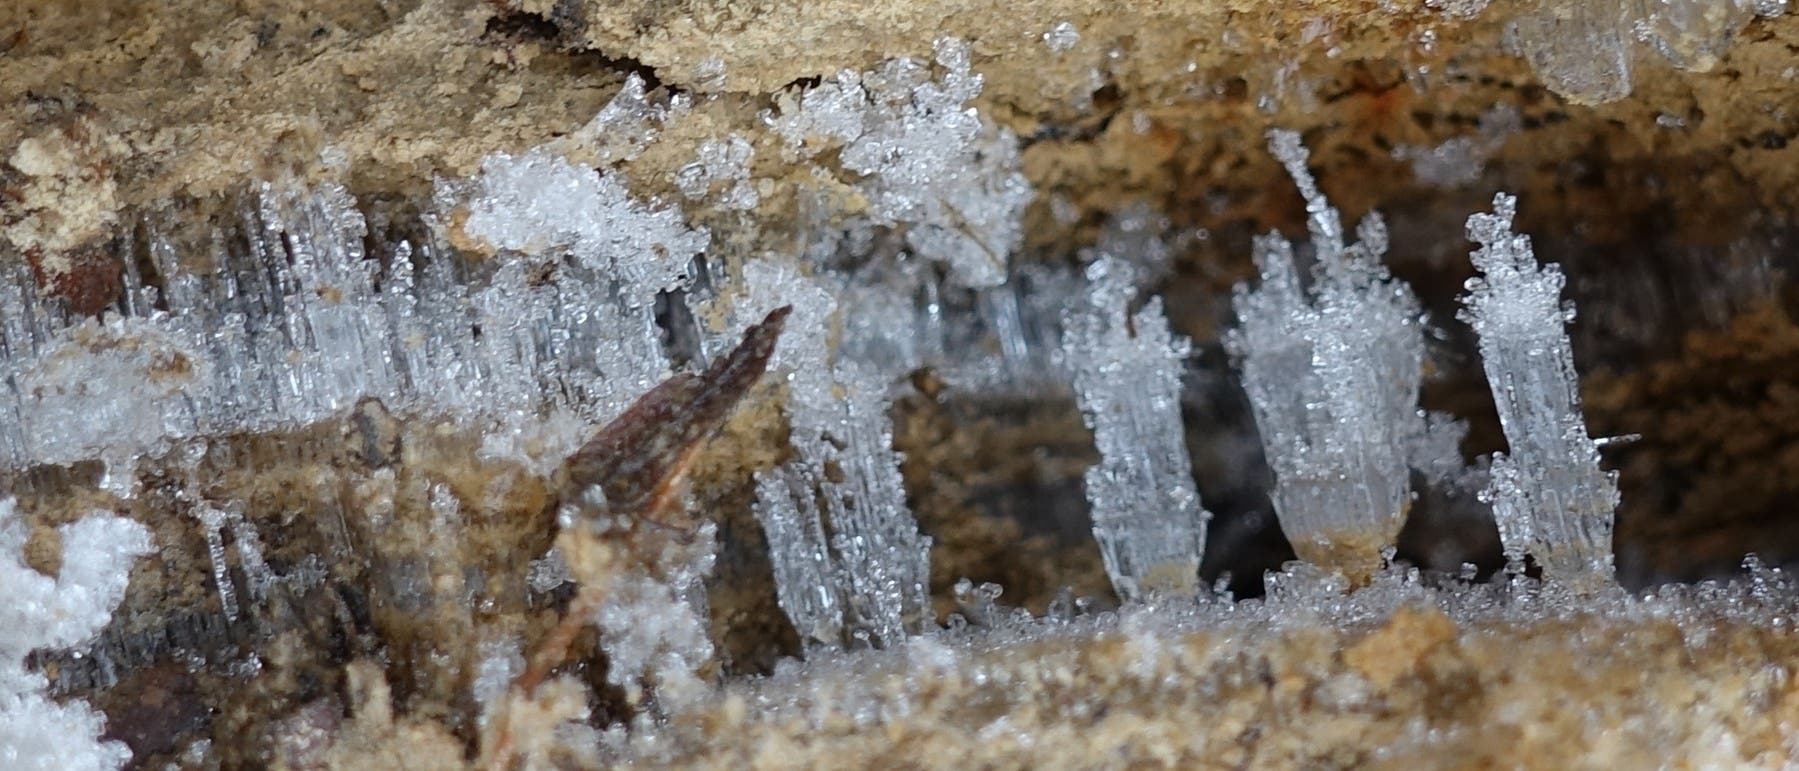 An einem feuchten Hang streben aus sandiger, teilweise lehmhaltiger Erde dünne Stränge aus Eis empor.